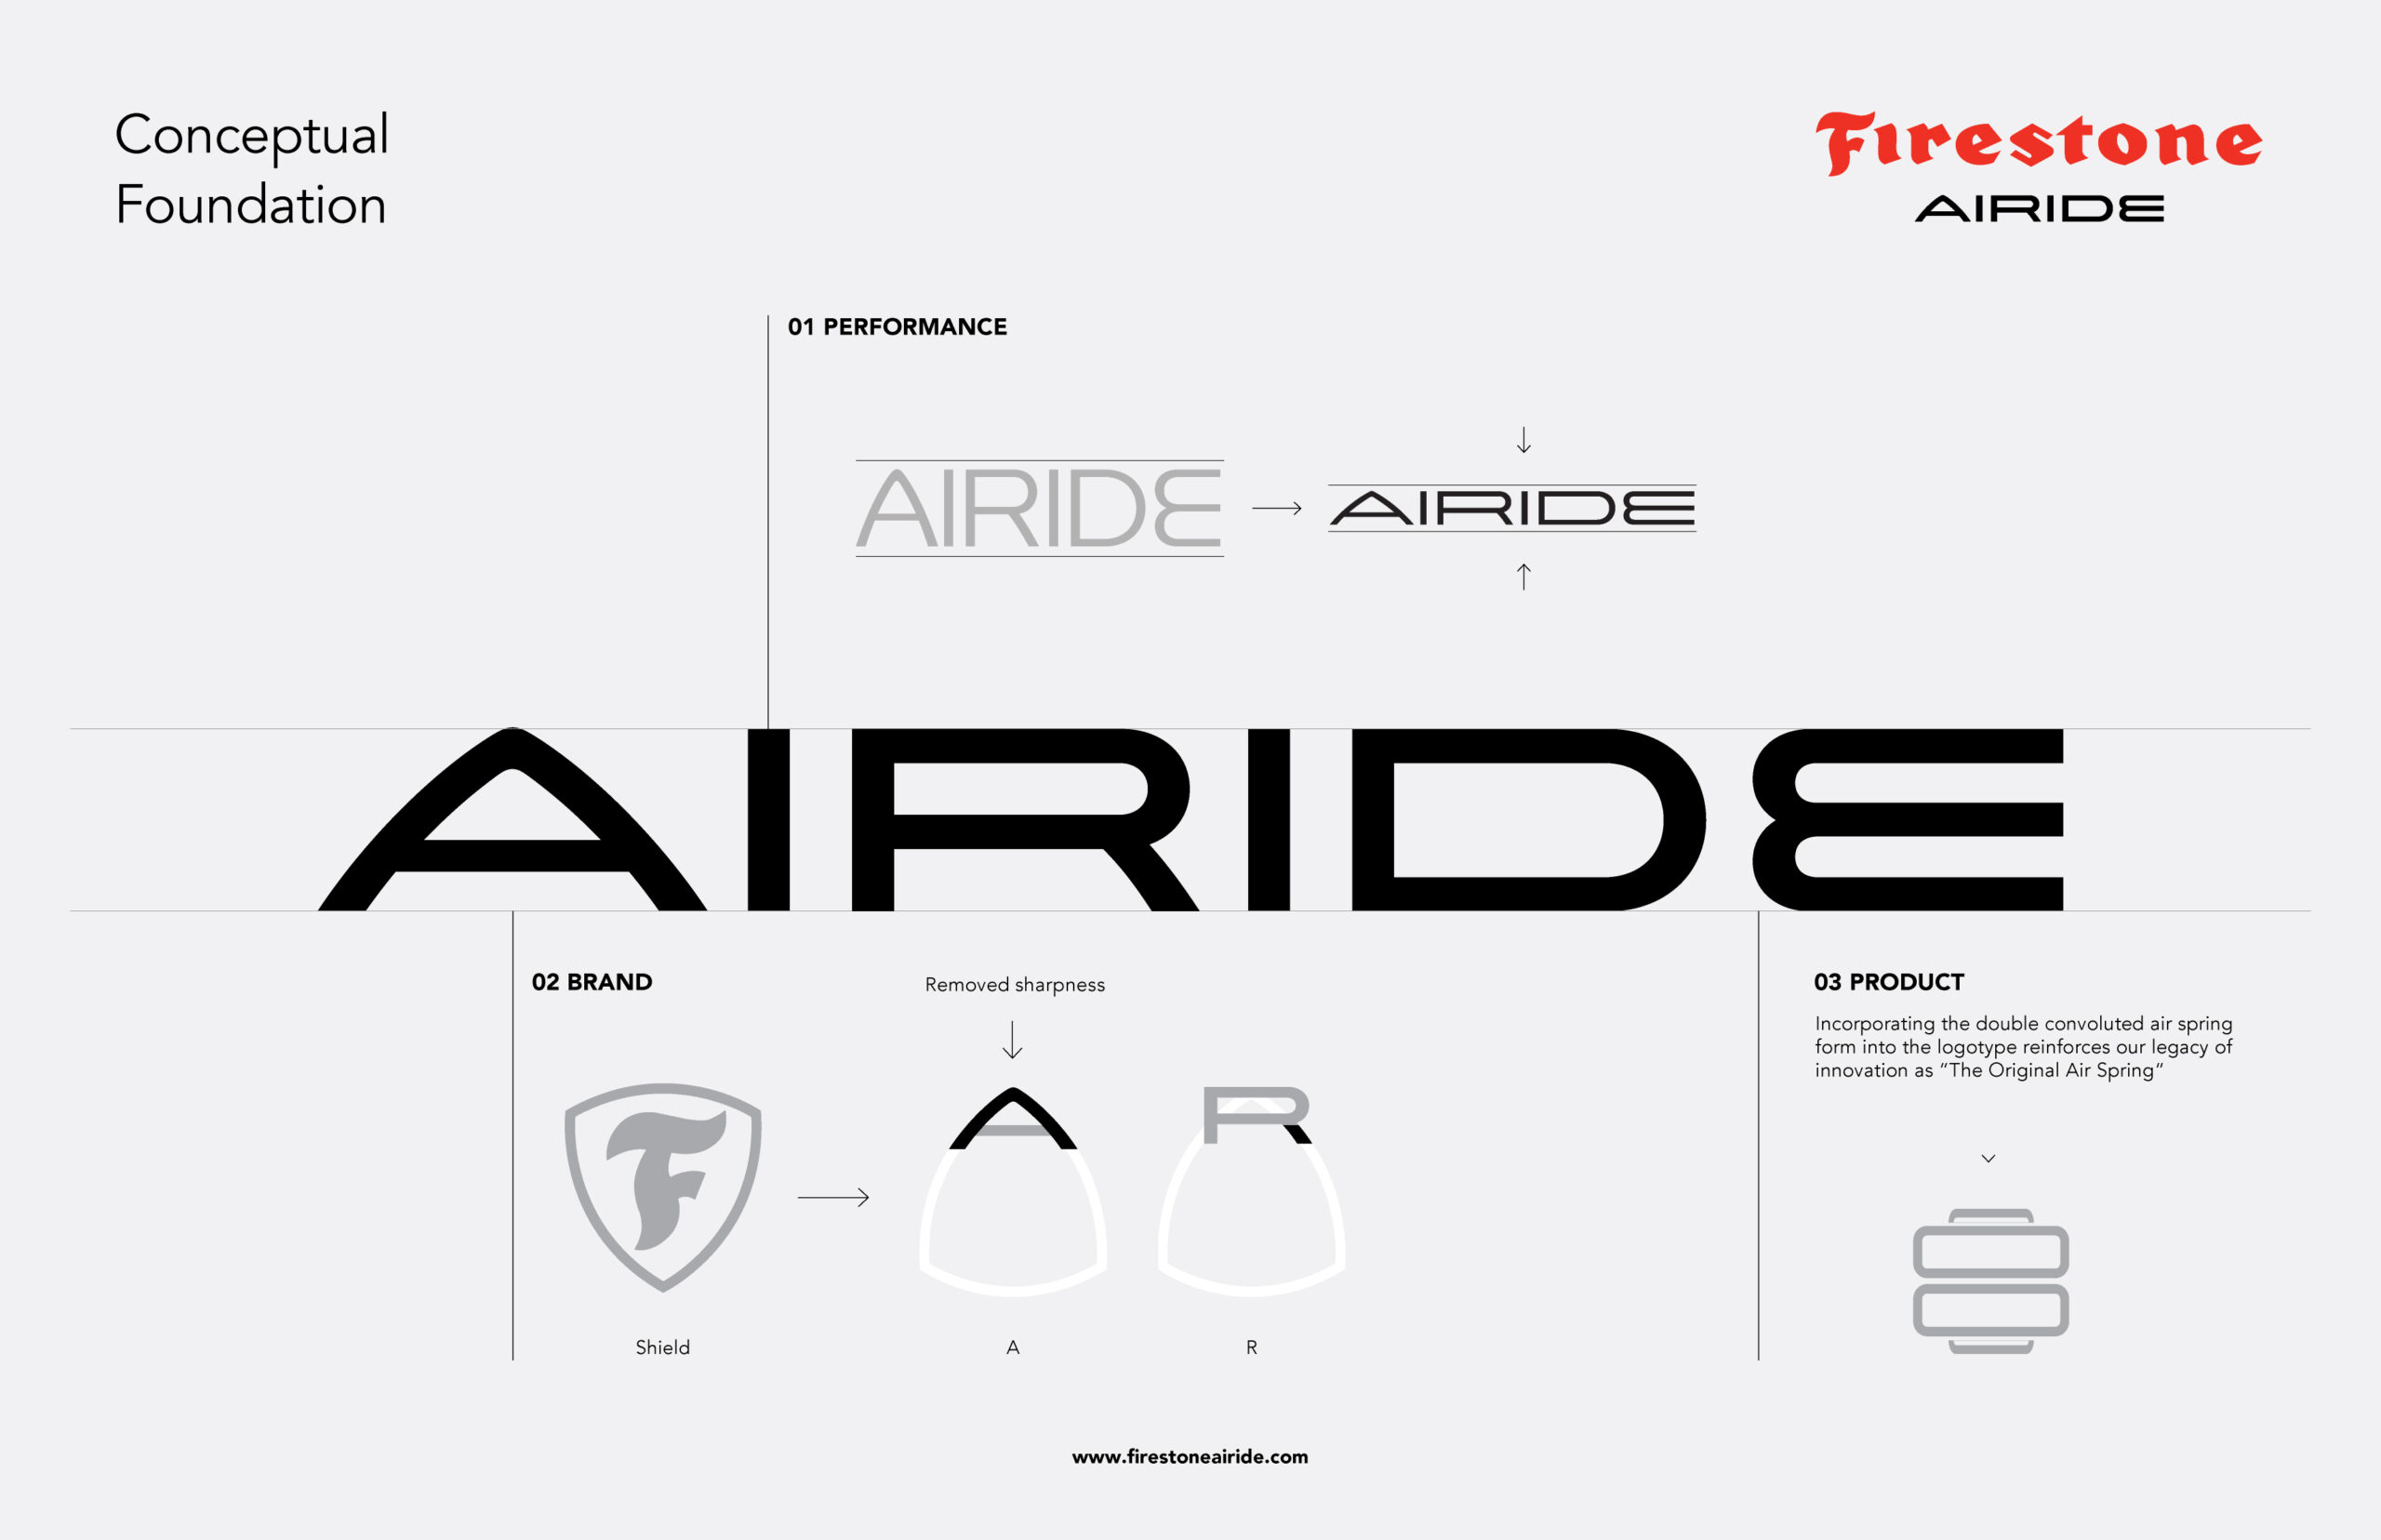 Firestone Industrial Products Company cambia su marca y pasa a llamarse Firestone Airide